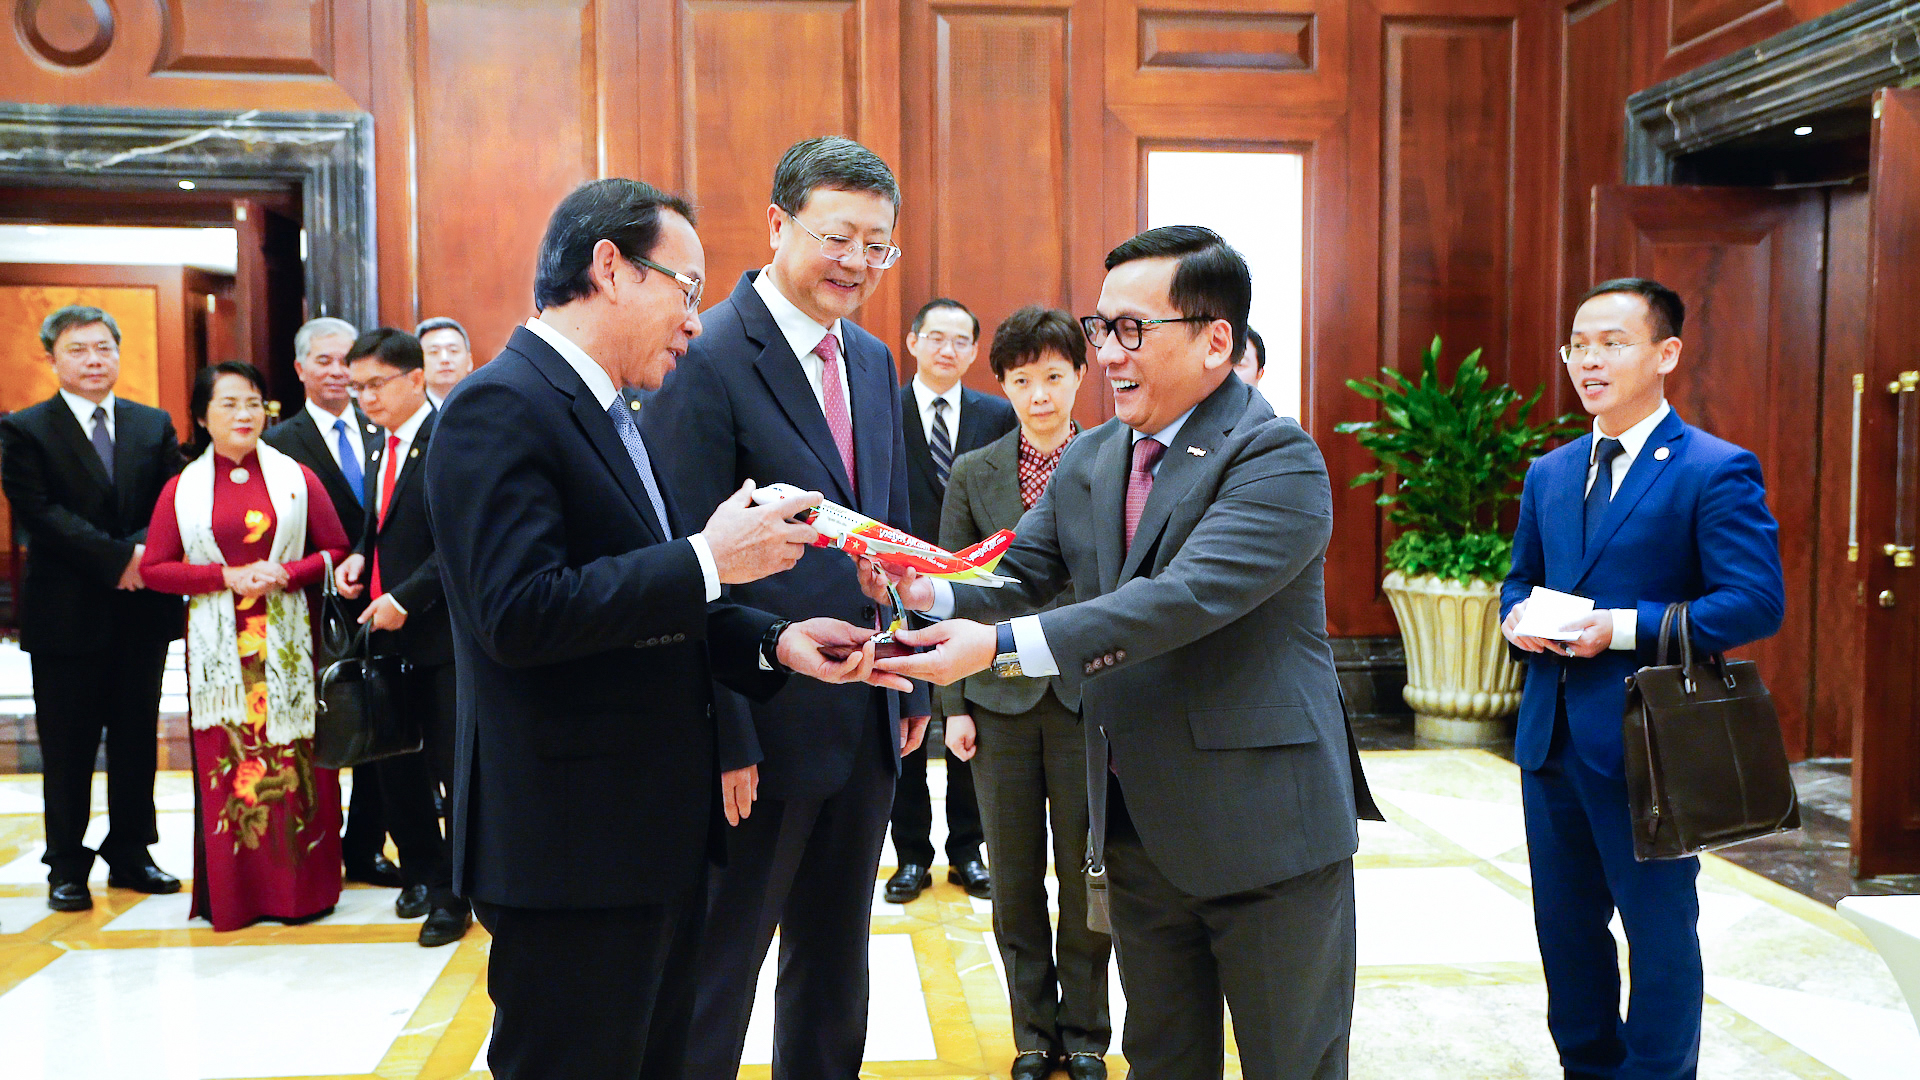 Bí thư Thành ủy Thượng Hải và Bí thư Thành ủy TP Hồ Chí Minh chúc mừng đường bay Thượng Hải – TP Hồ Chí Minh của Vietjet